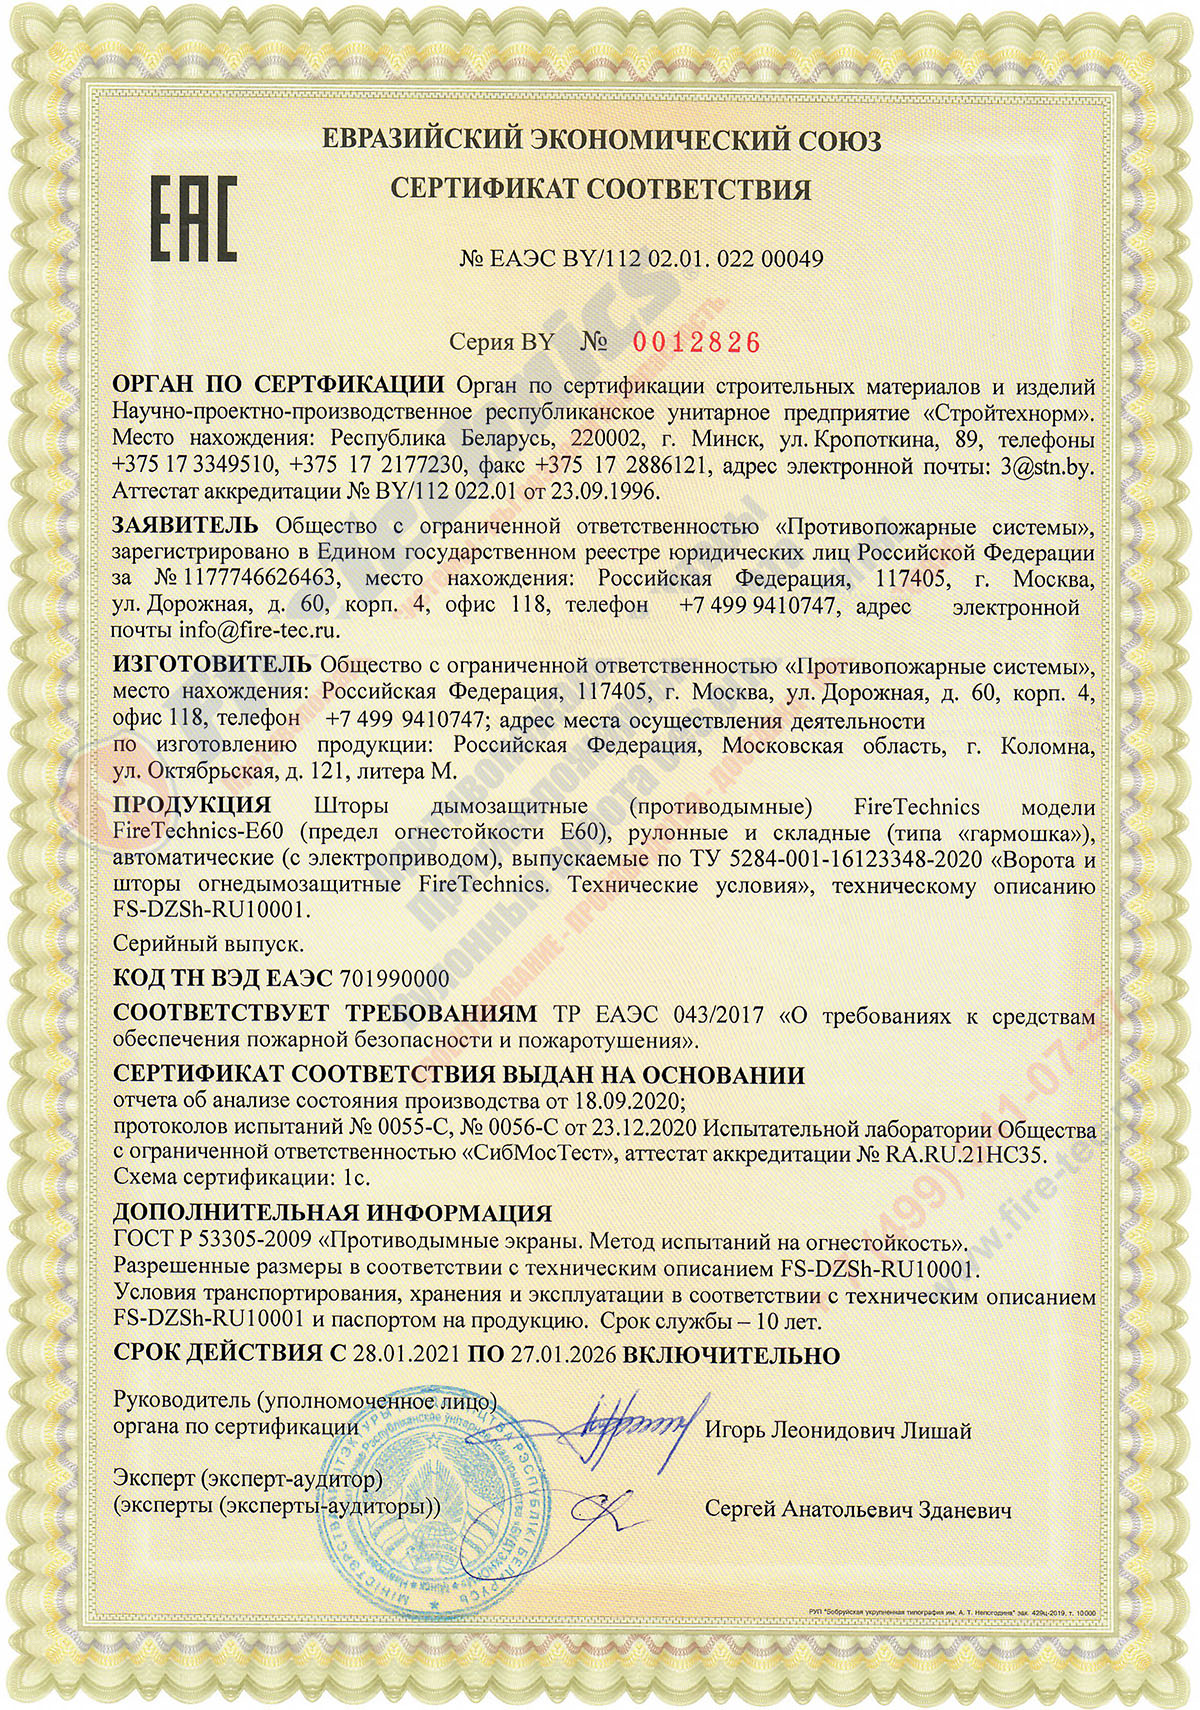 Сертификат соответствия ТР ЕАЭС 043/2017 № ЕАЭС BY/112 02.01. 022 00049